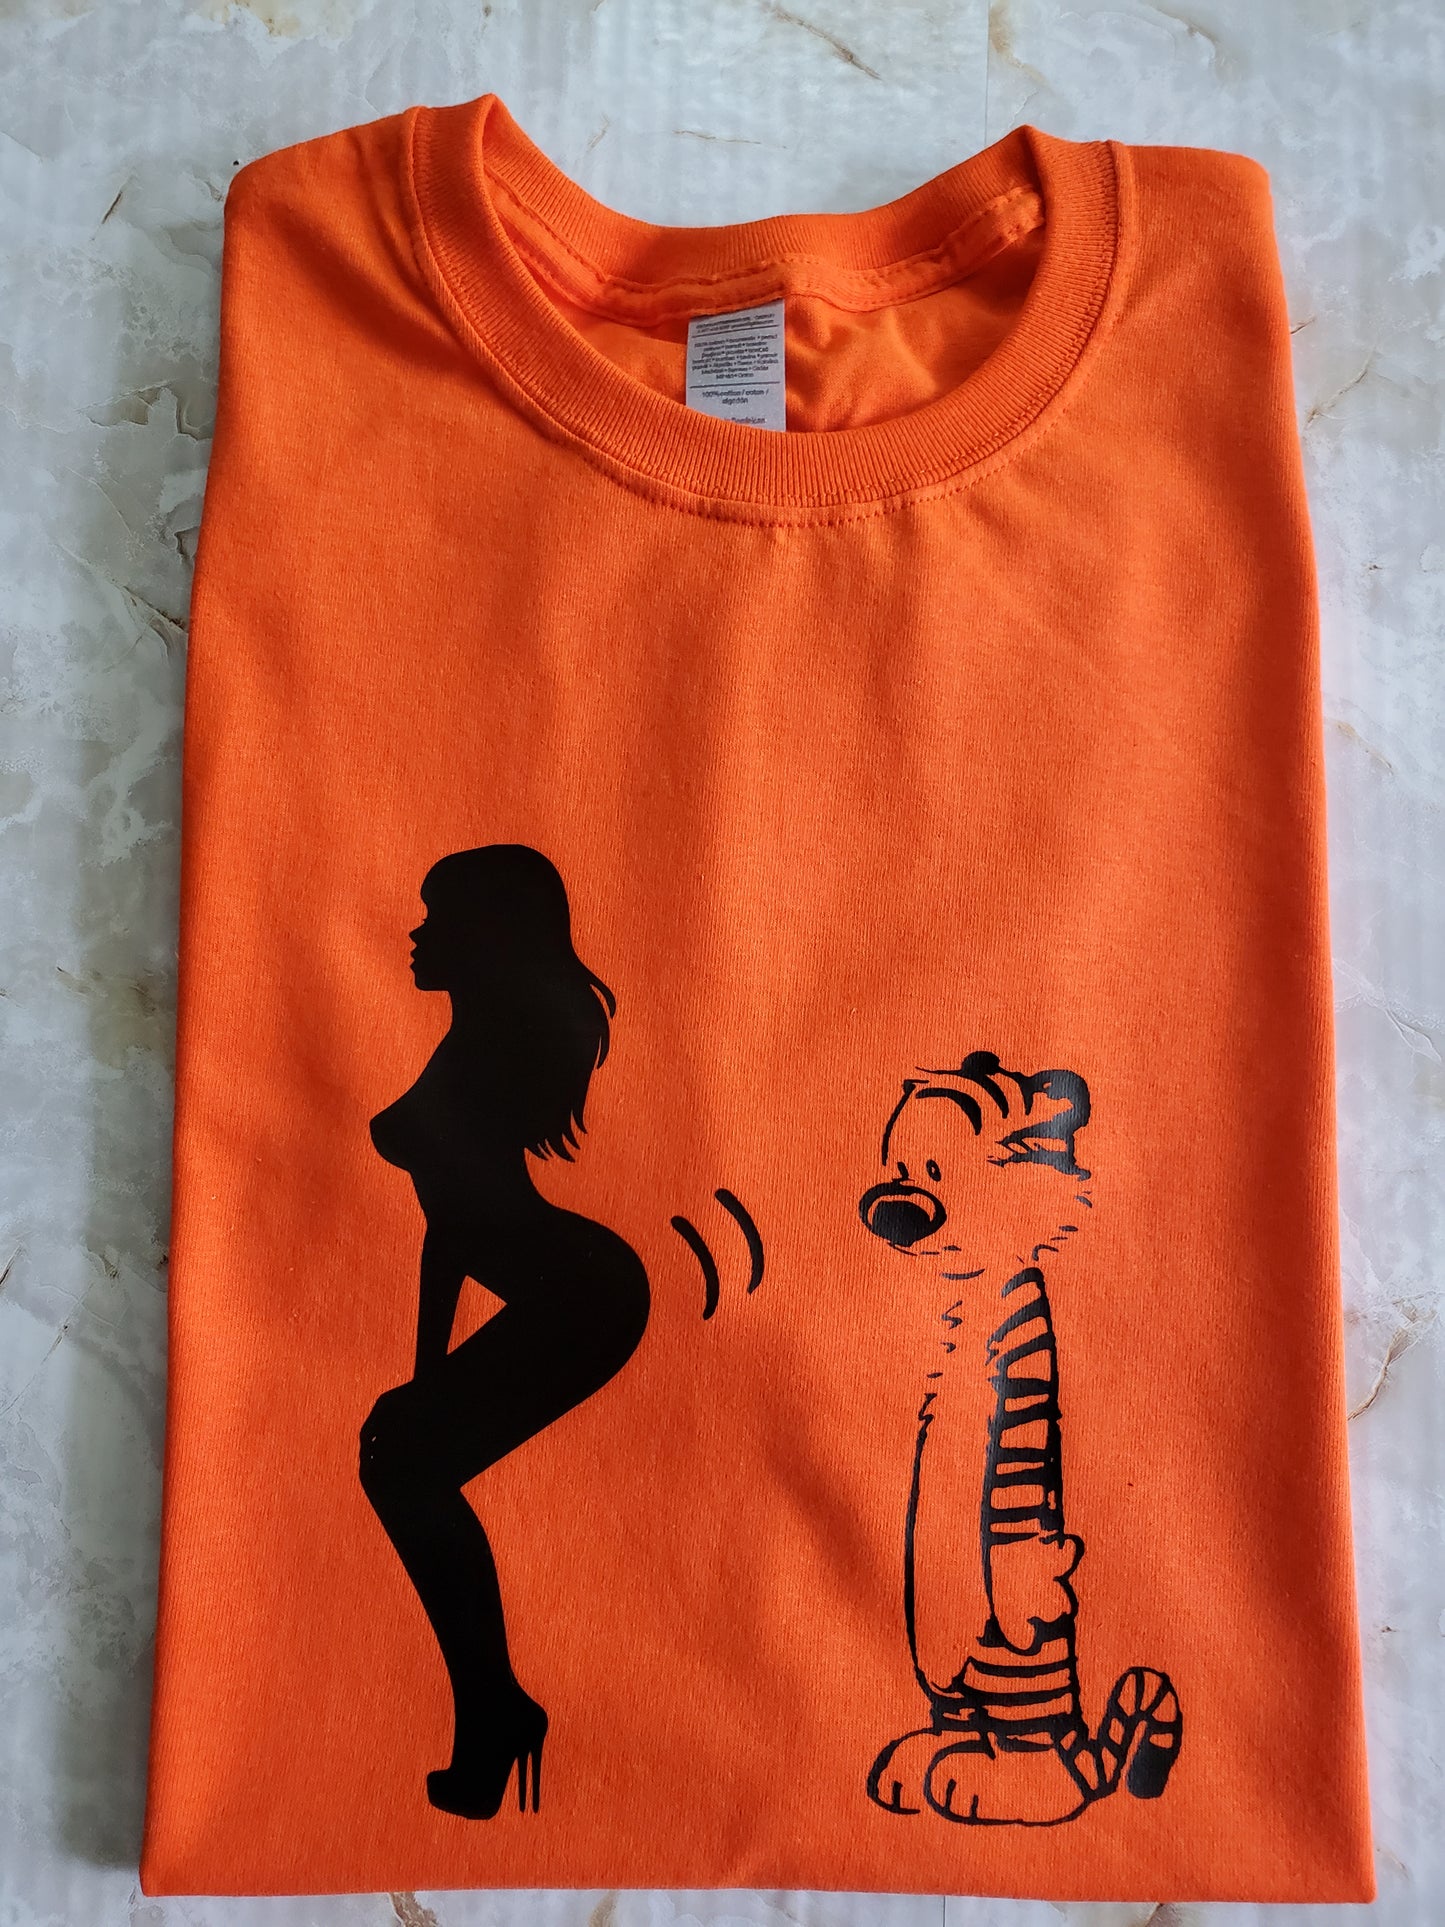 Twerk Som' Hobbes T-Shirt (Orange) - Centre Ave Clothing Co.